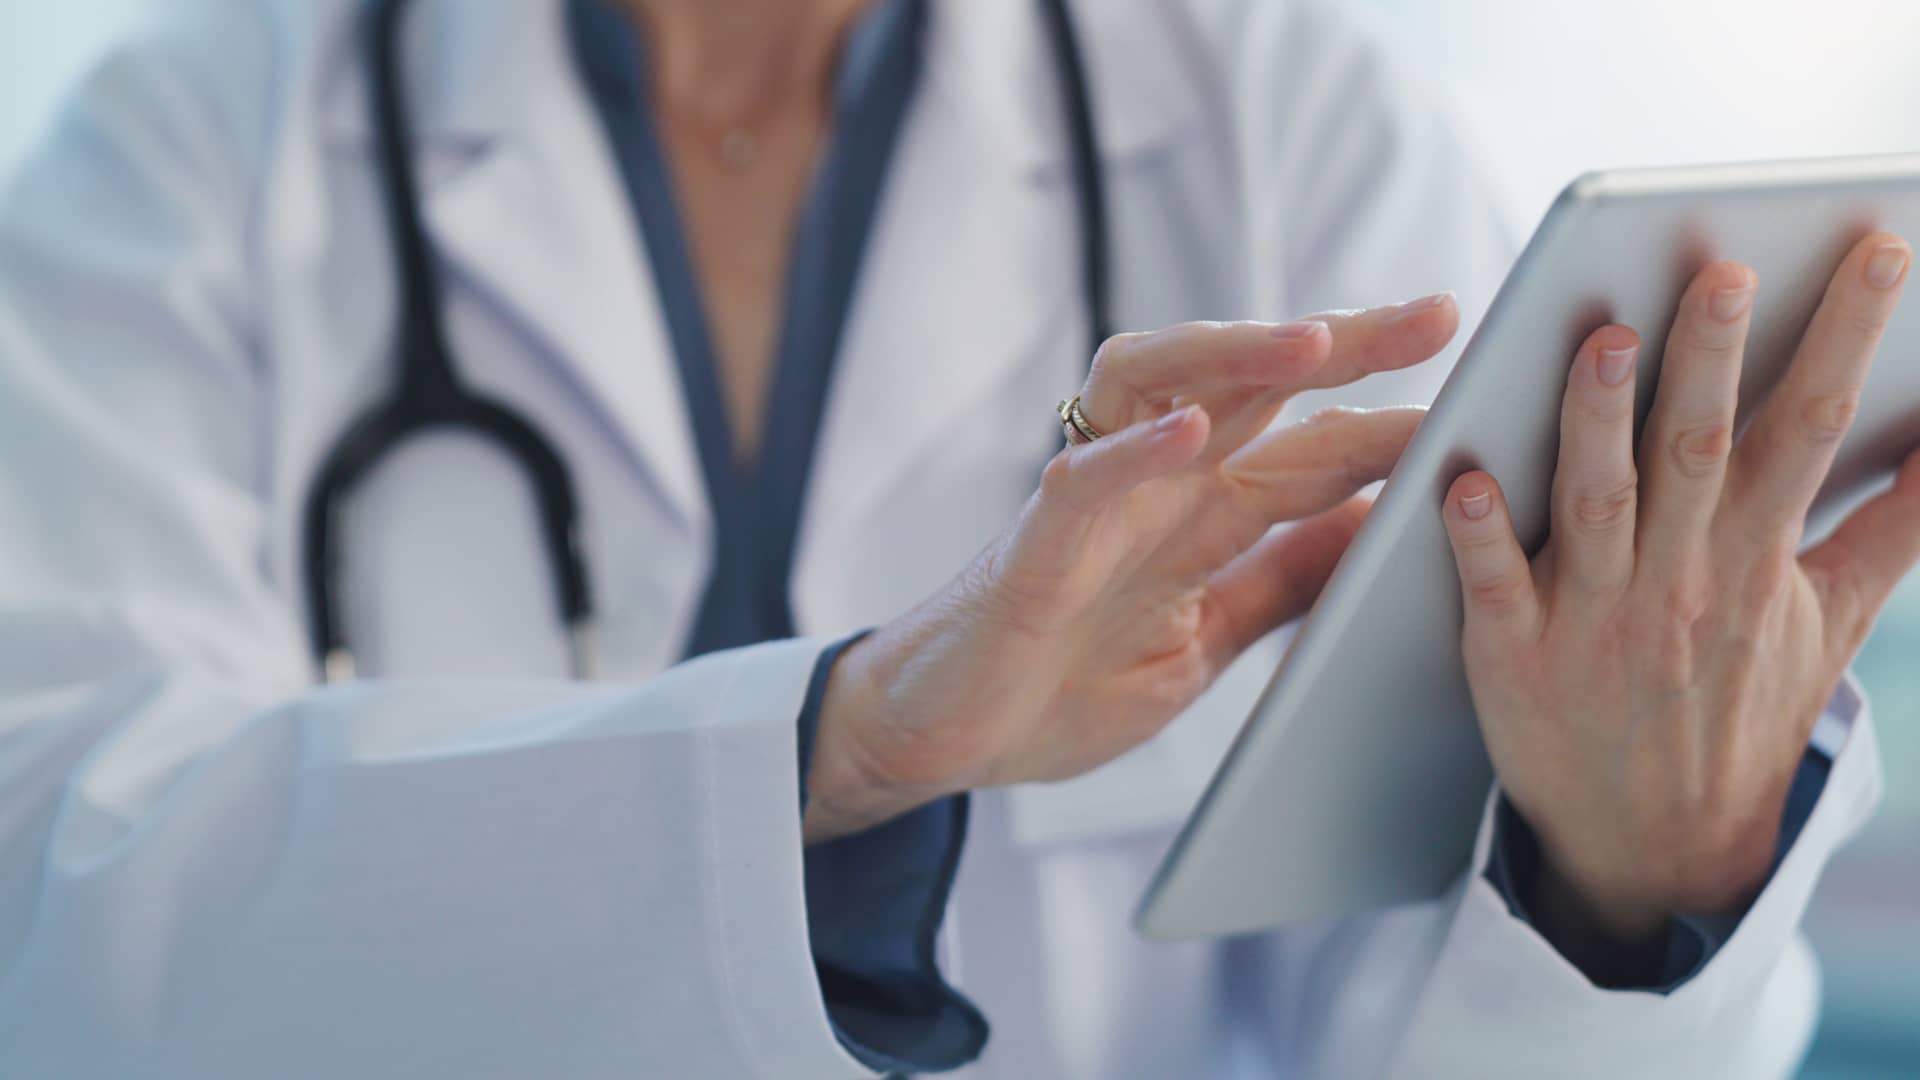 Médica especialista en andrología revisa los resultados de un paciente de seguros Adeslas en su tablet